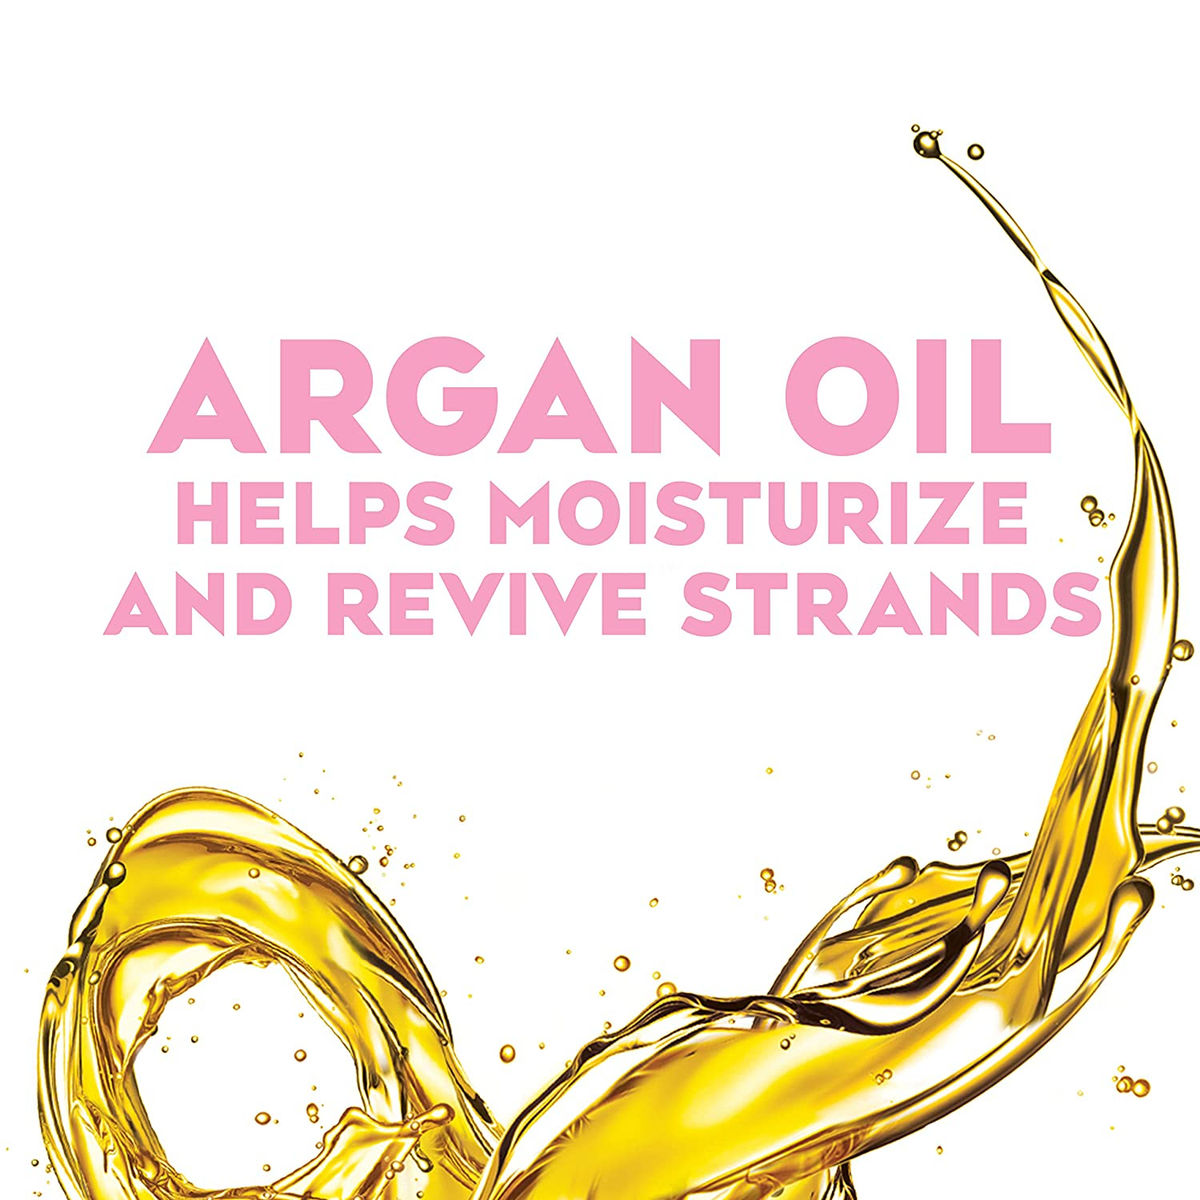 OGX Argan Oil Of Morocco Shampoo (385 ml) OGX